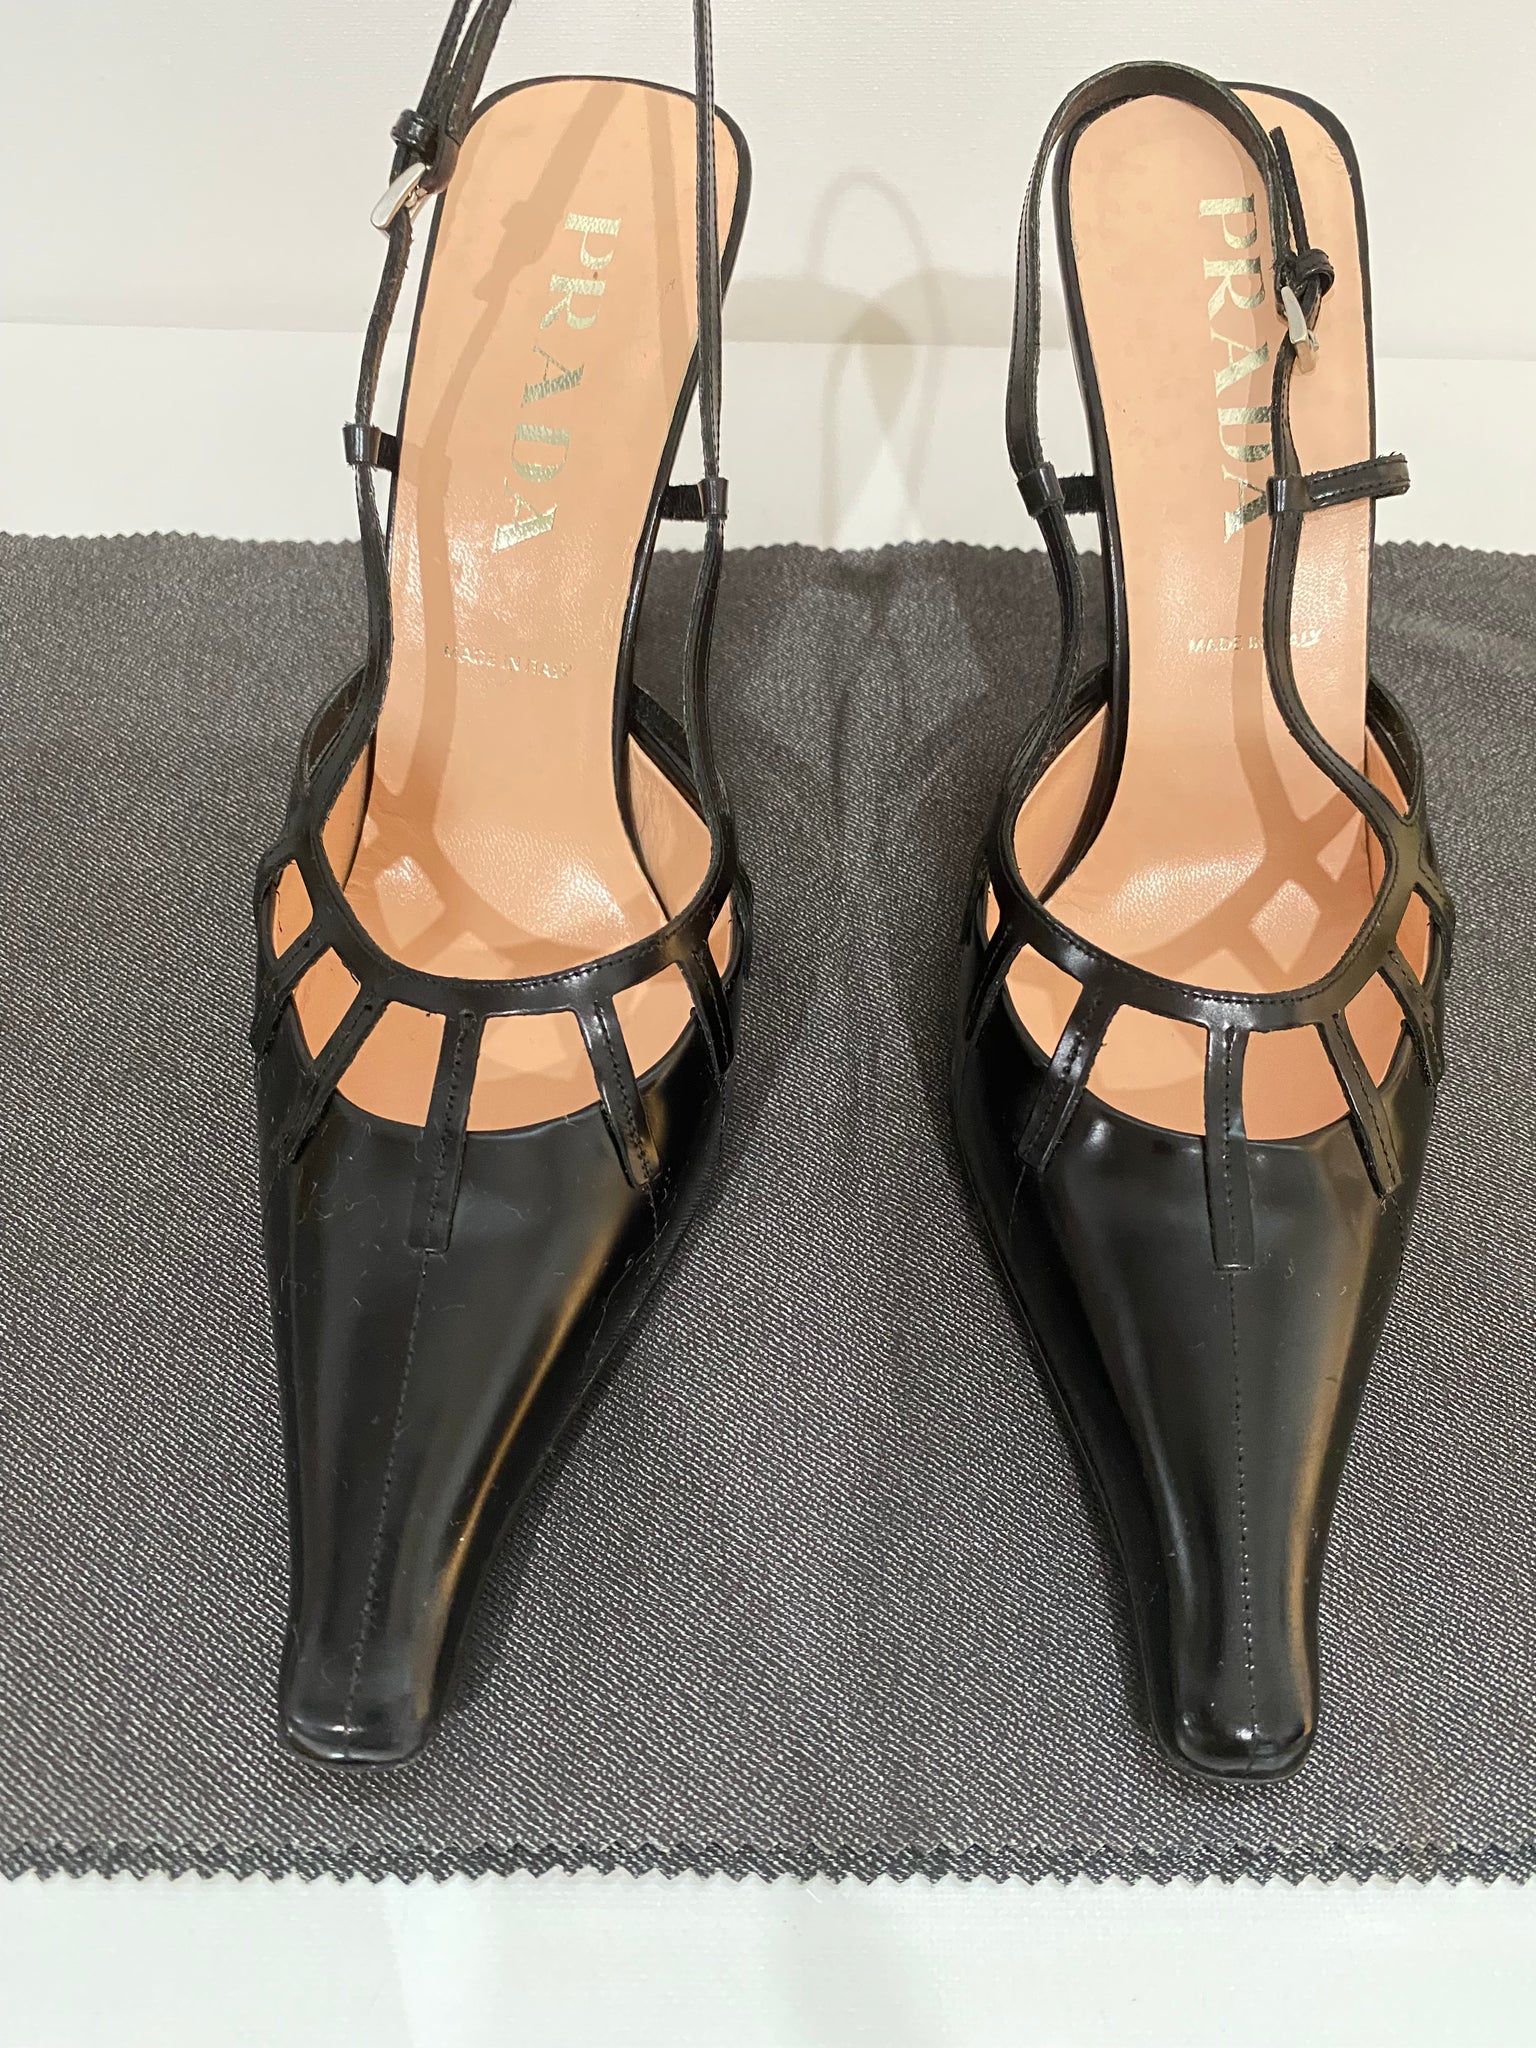 Vintage Prada Black Leather High Heel Slingback